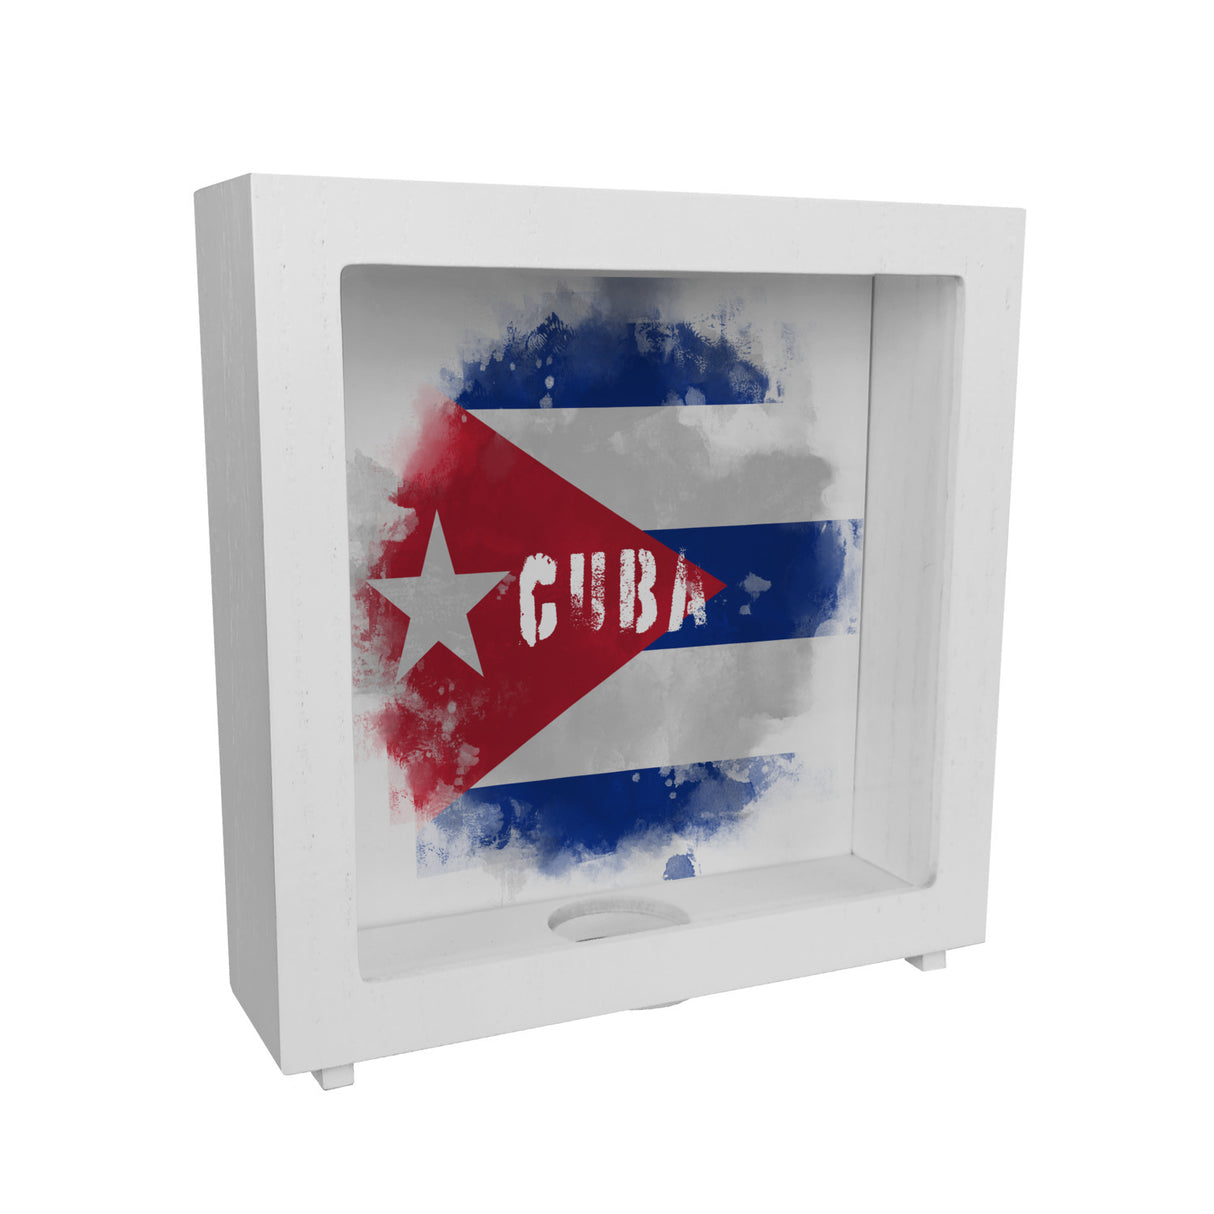 Spardose mit Kuba-Flagge im Used Look - Sparschwein für Urlauber